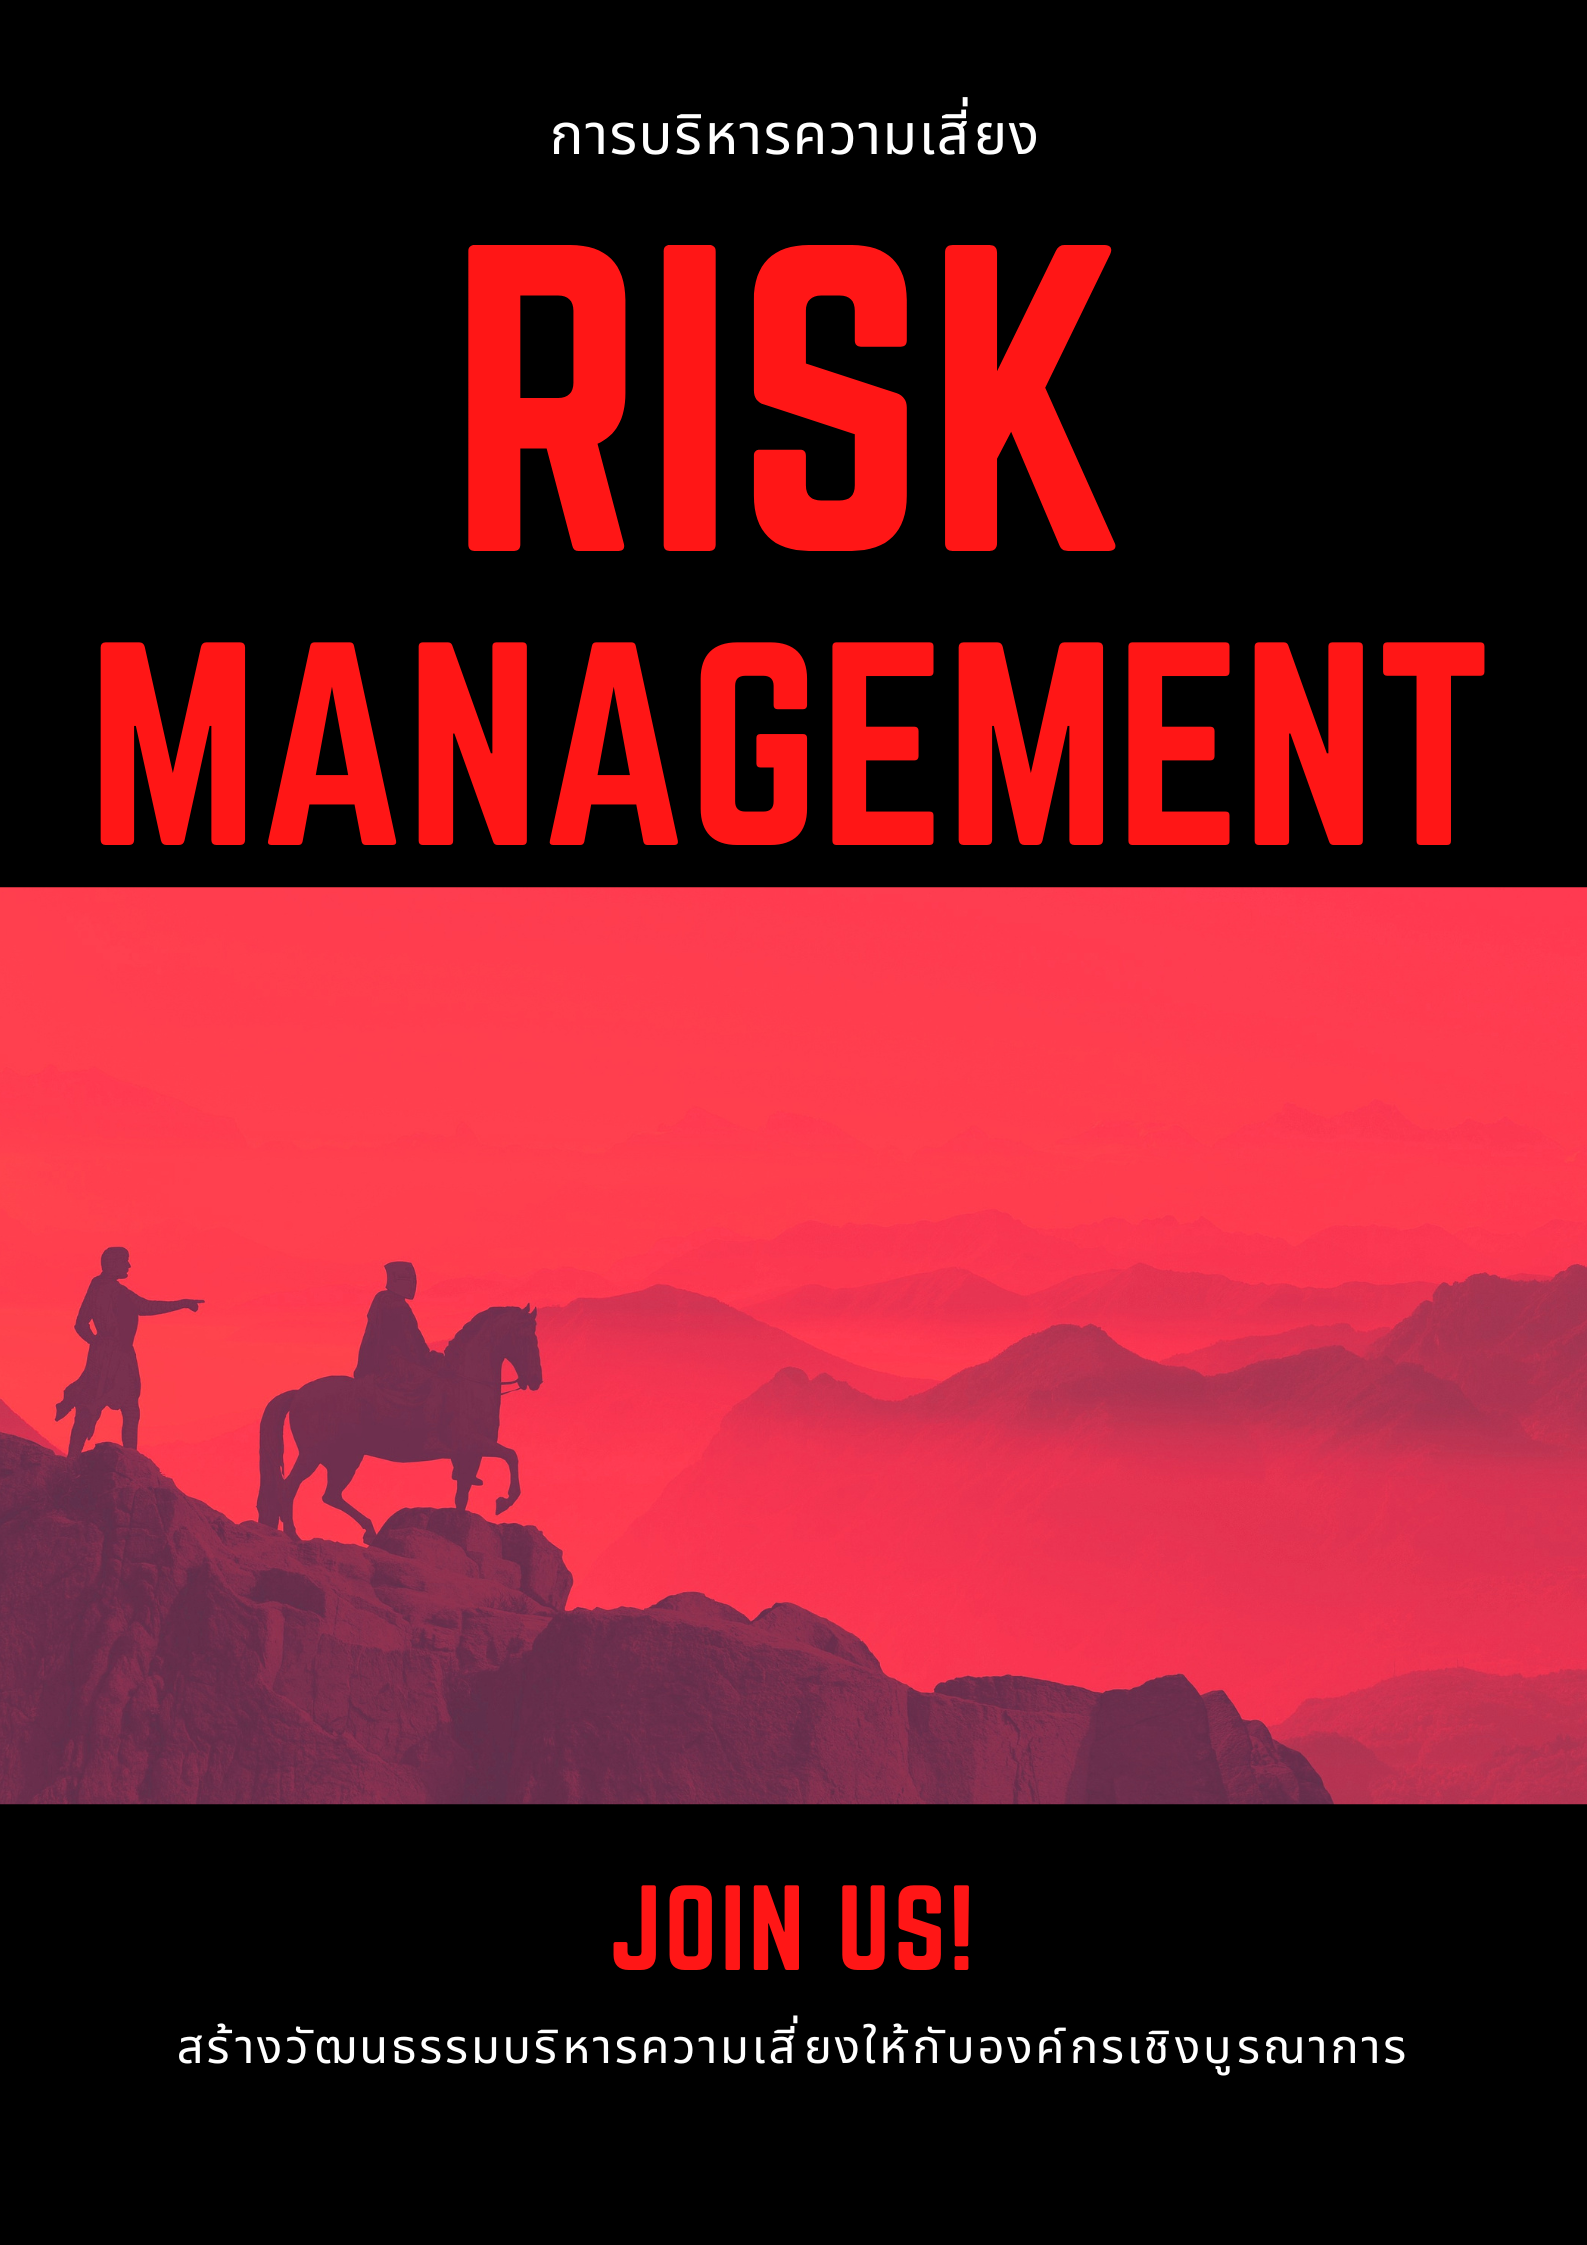 หลักสูตรอบรม การจัดการความเสี่ยง (Risk Management)